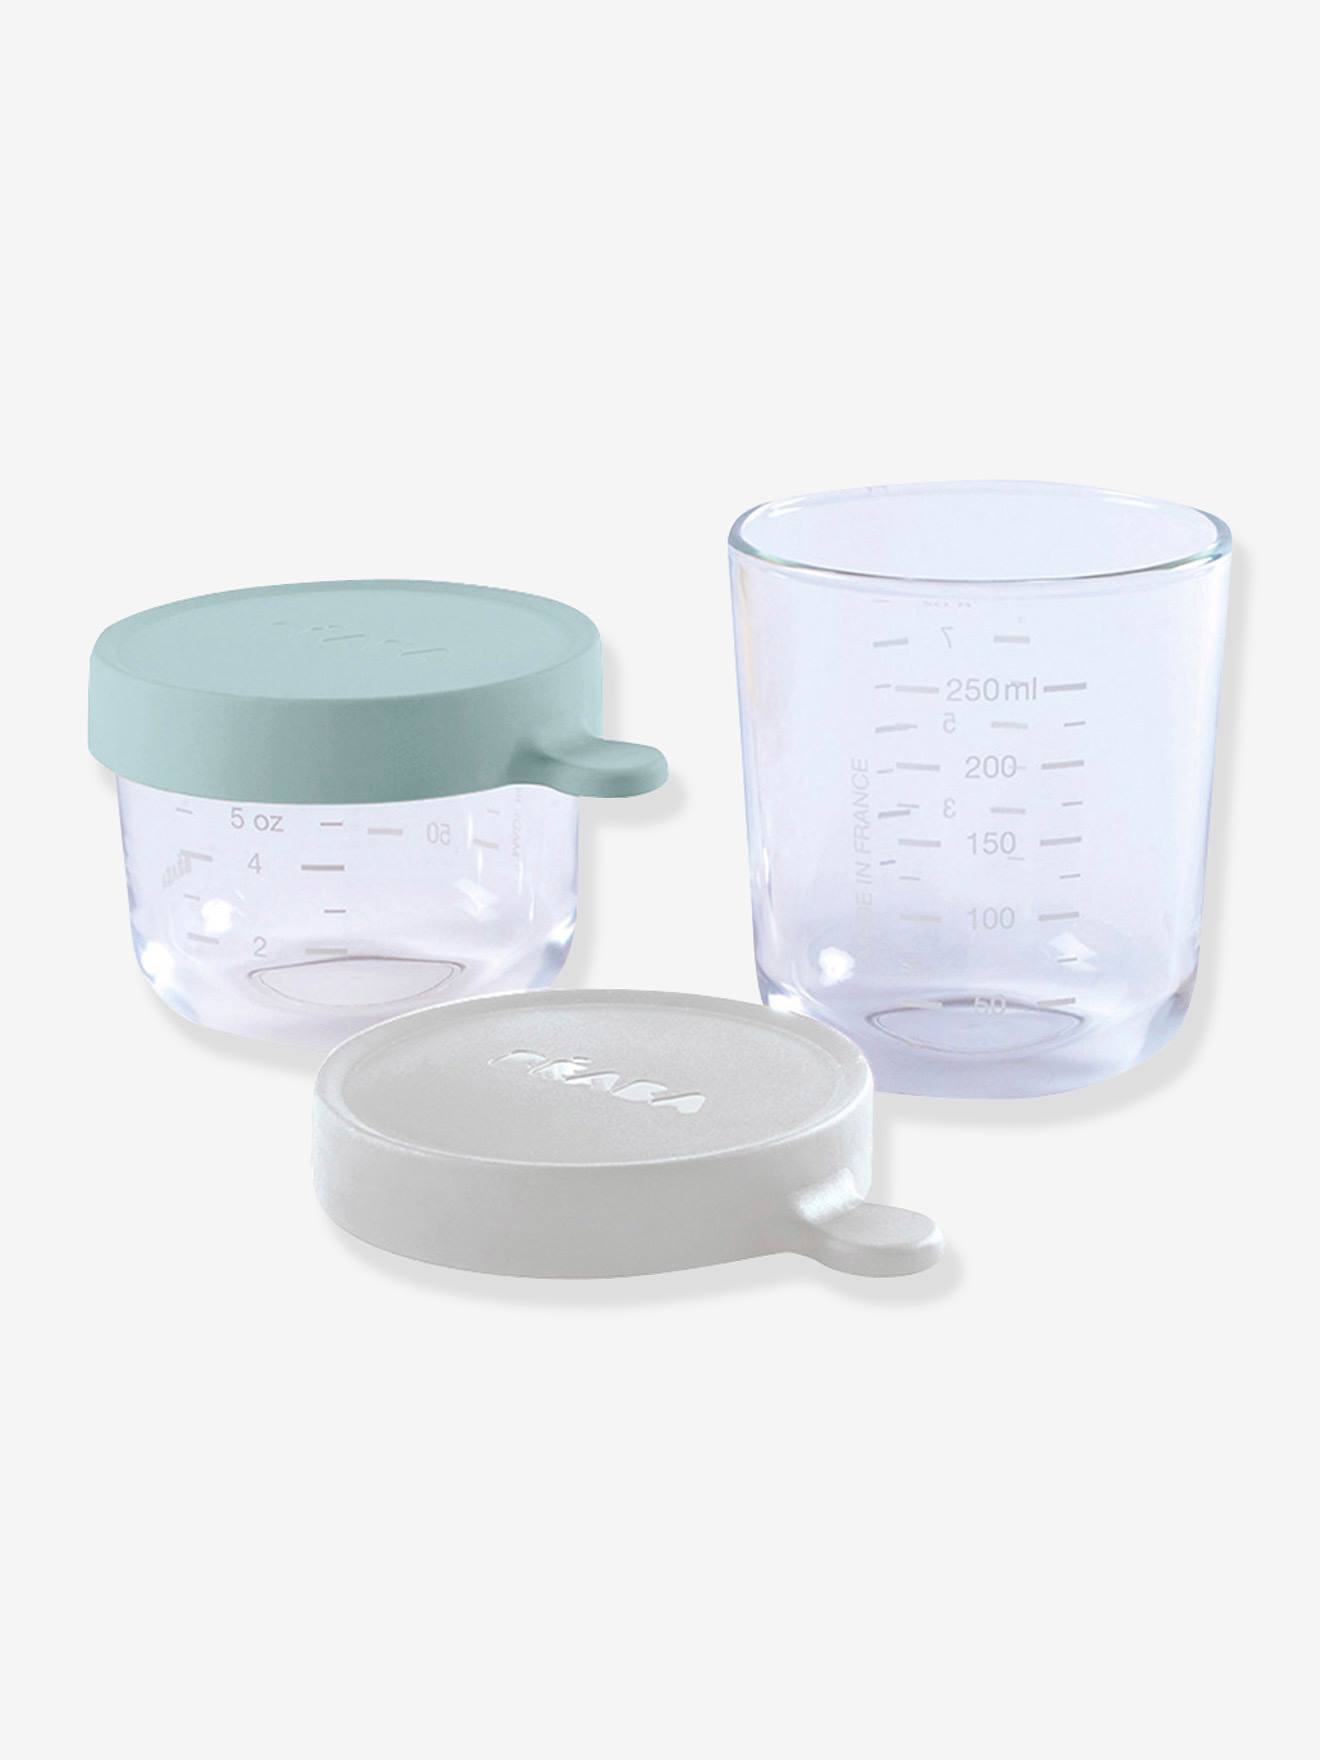 Les petits pots bébé en verre pour la conservation des repas